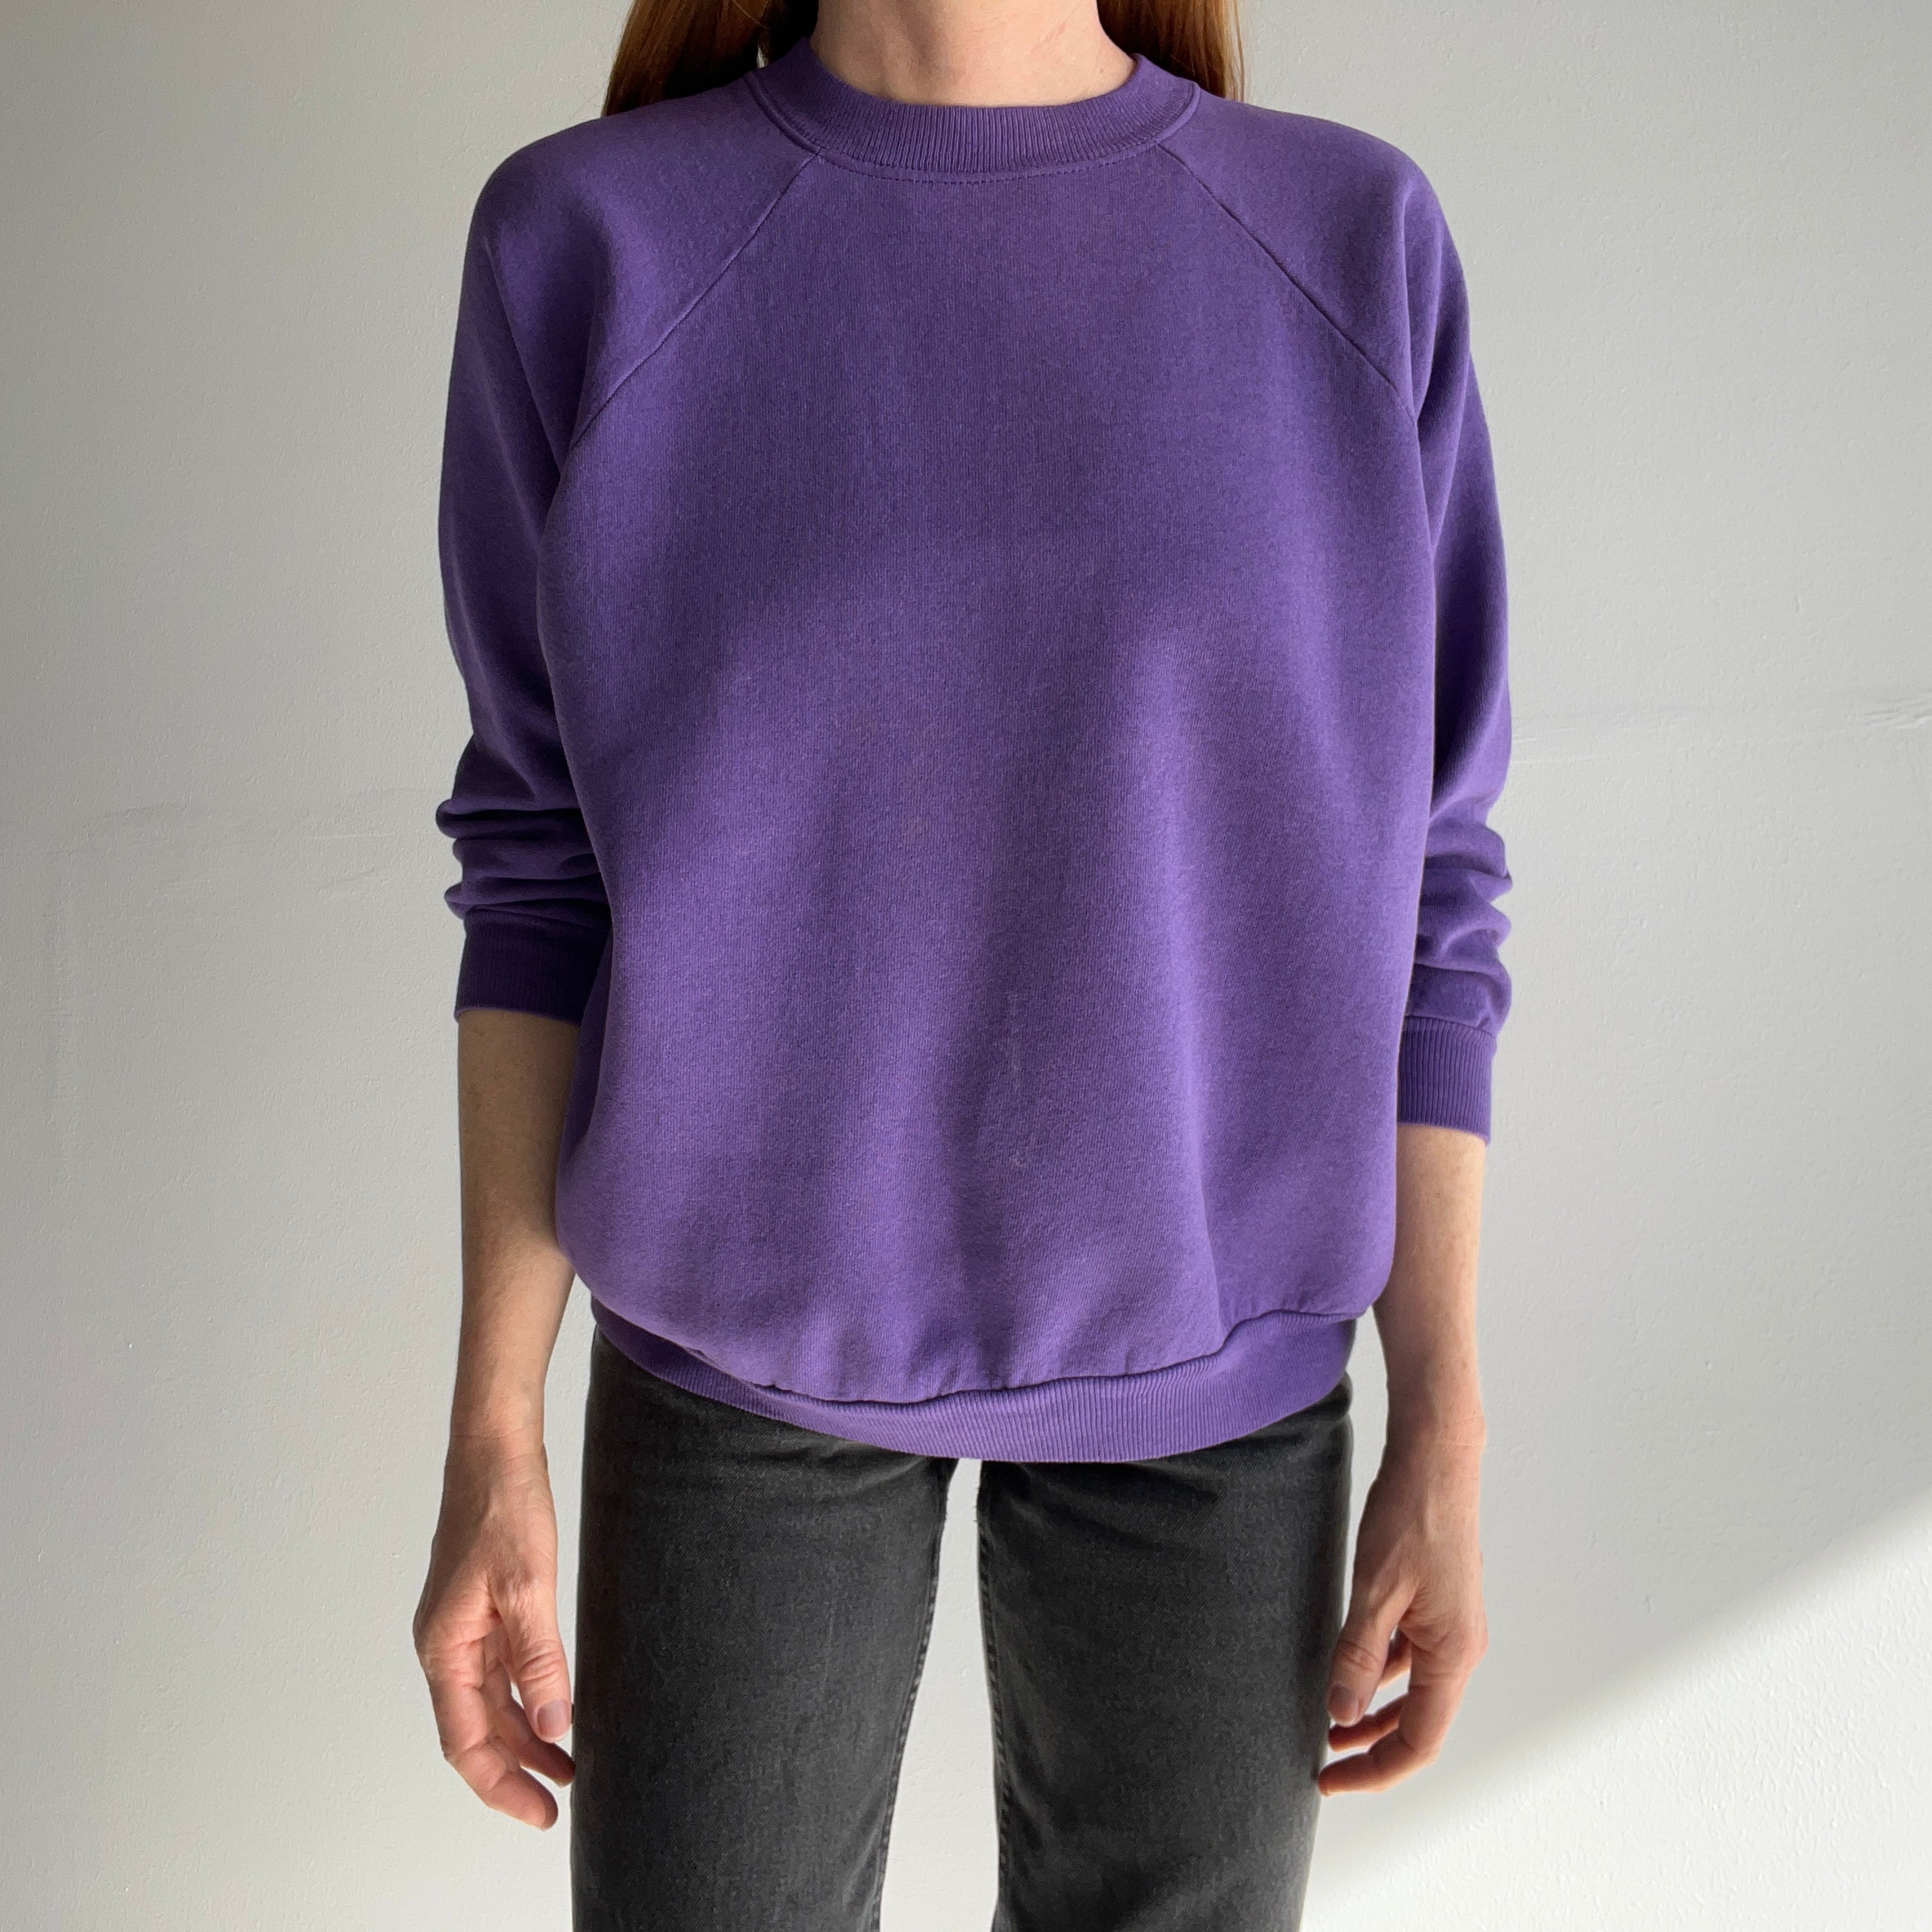 1990s Hanes Her Way Purple Raglan Sweatshirt